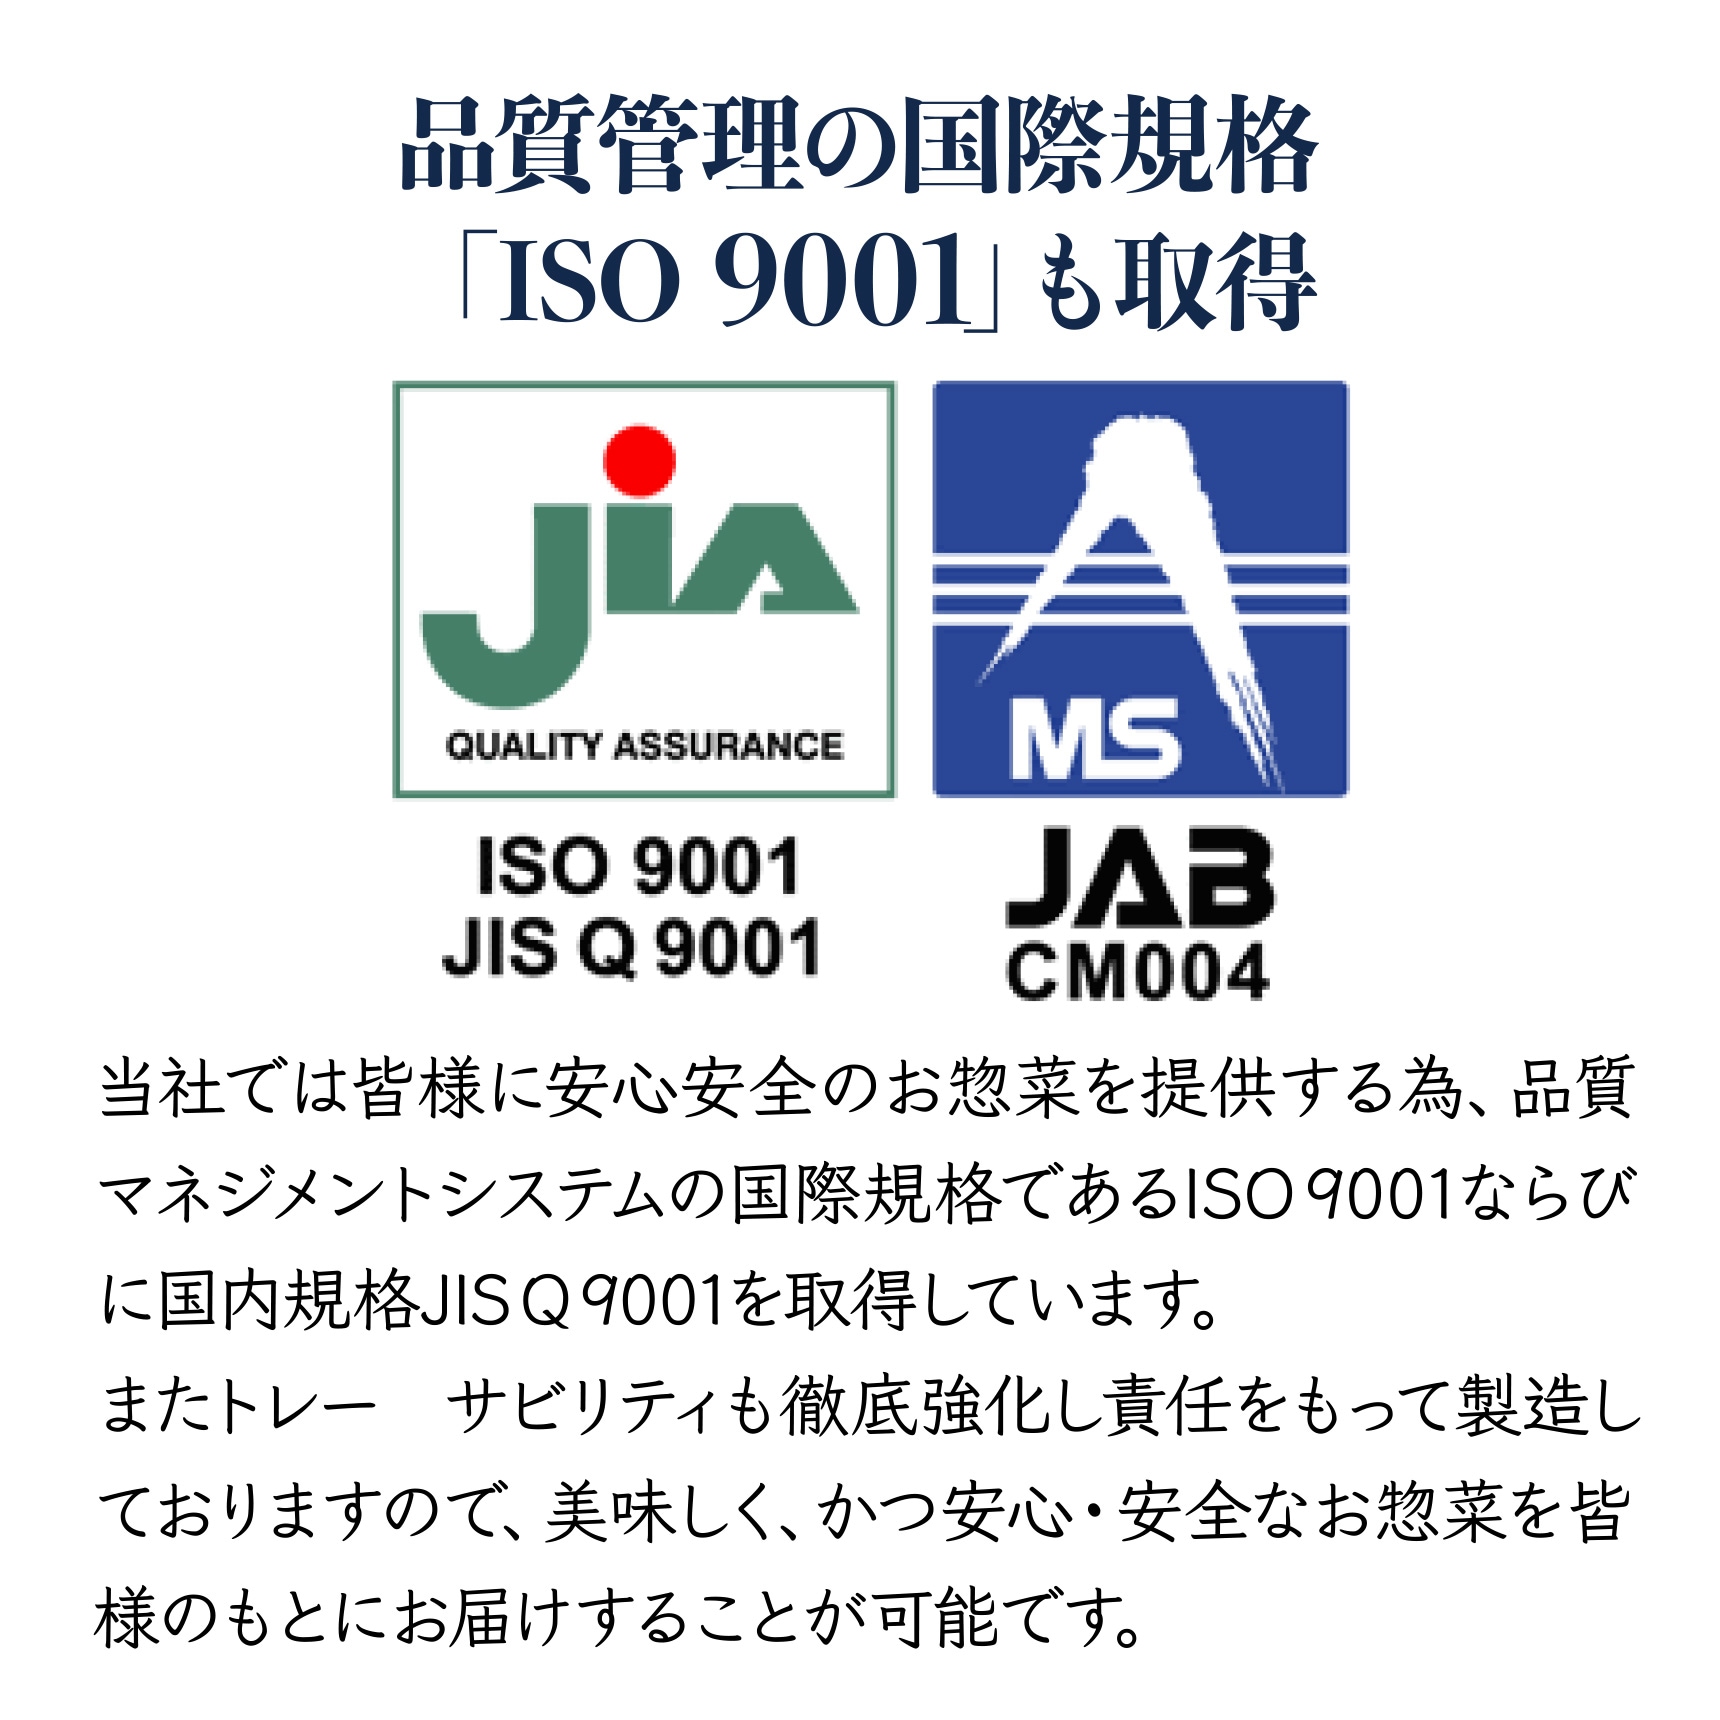 品質管理の国際規格「ISO 9001」も取得